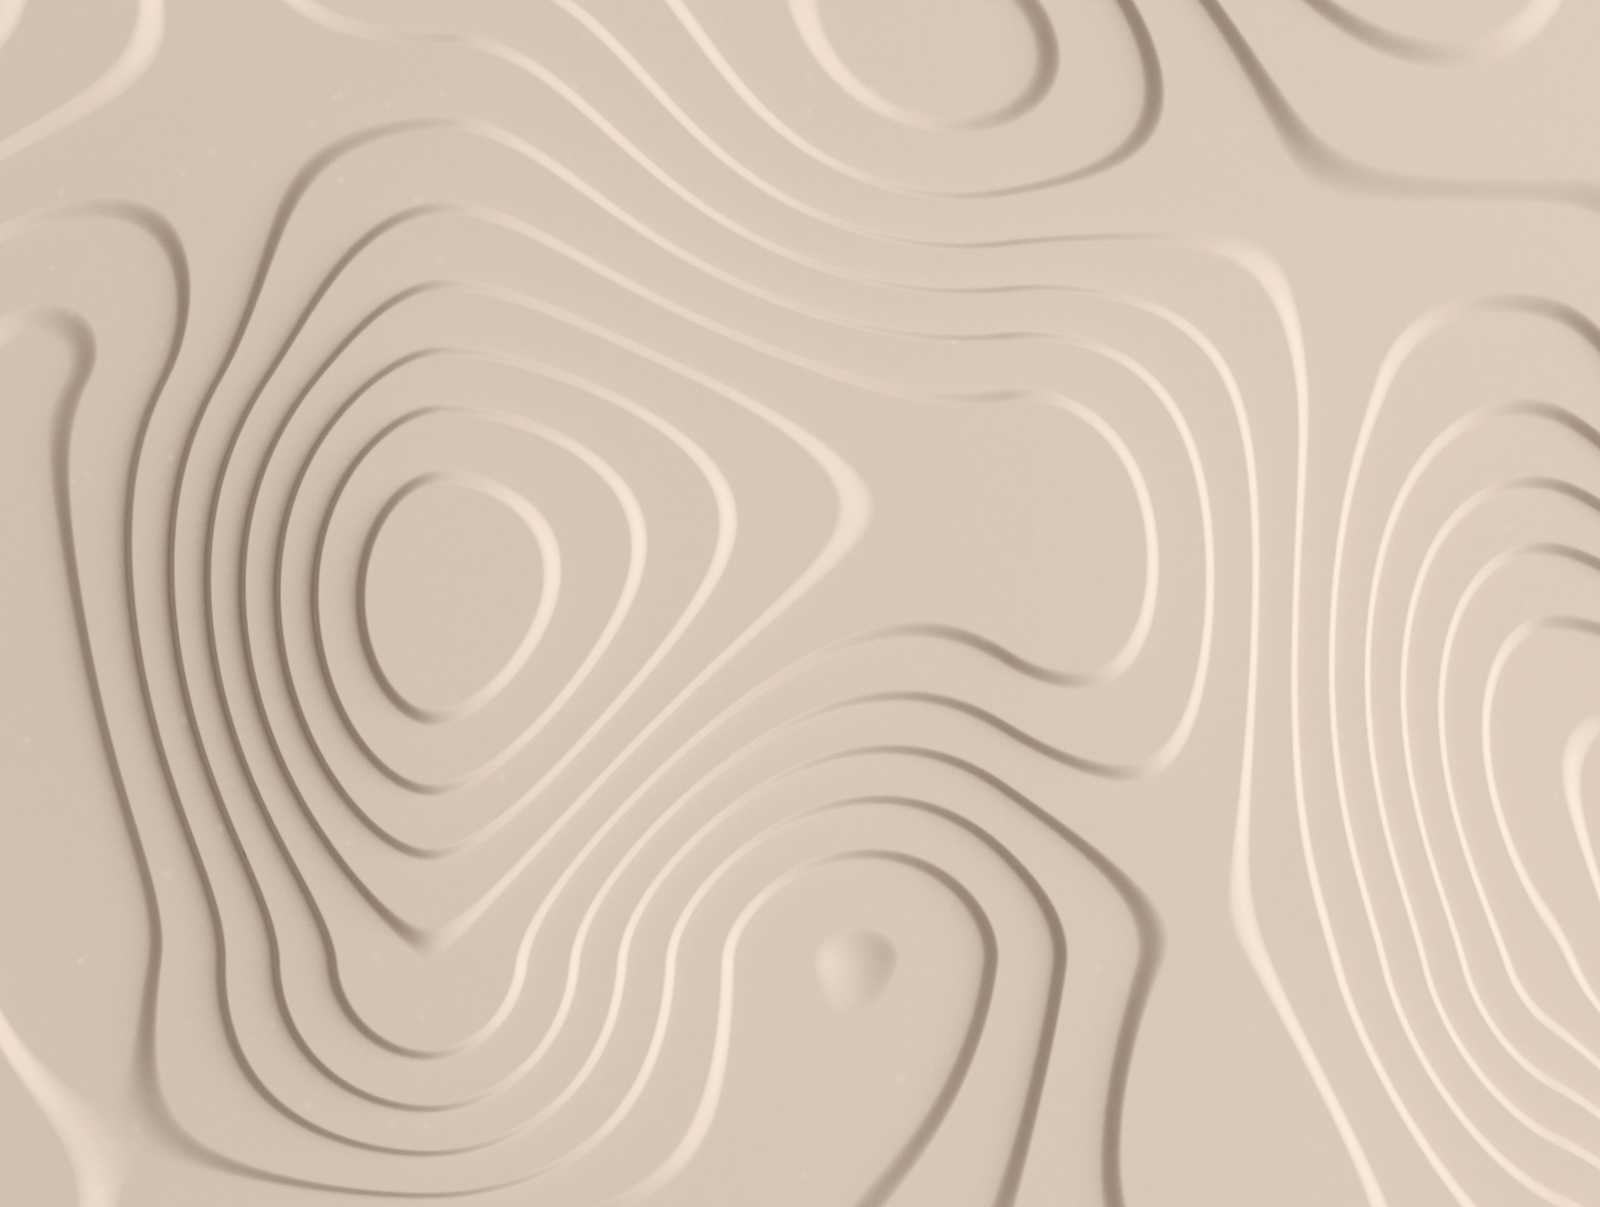             Carta da parati novità - Carta da parati con motivo 3D, linee tipografiche ed effetto ombreggiatura
        